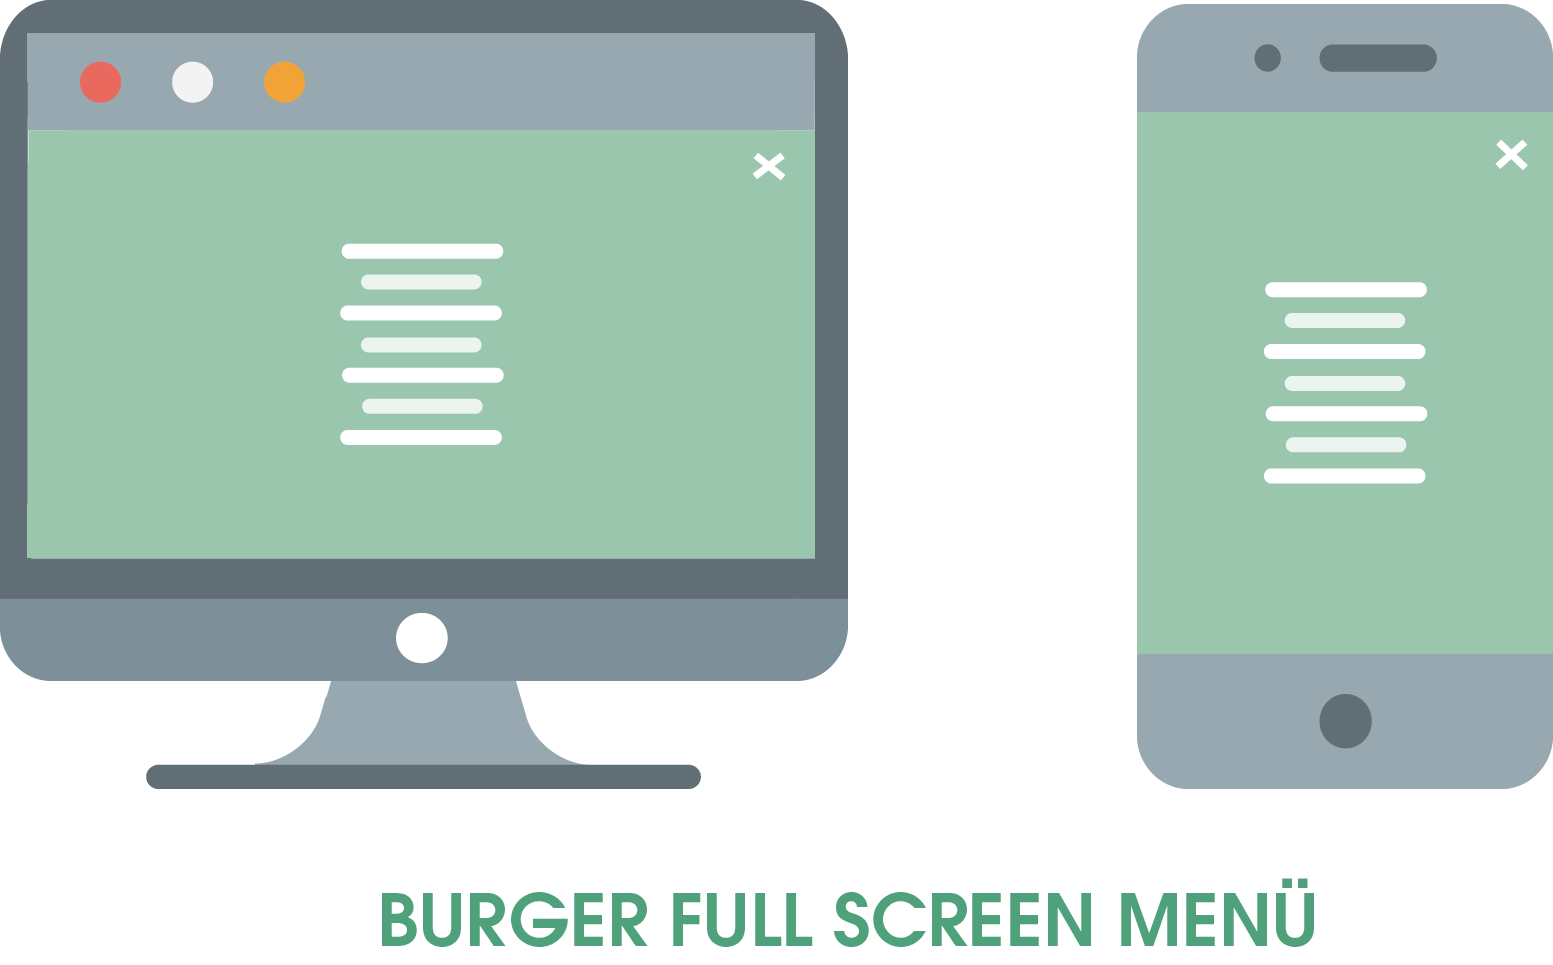 Zu sehen ist das Burger Full Screen Menü, welches sich nach dem Anklicken des Burger-Symbols (zu erkennen an den drei übereinandergestapelten Balken) über den kompletten Bildschirm ausbreitet.